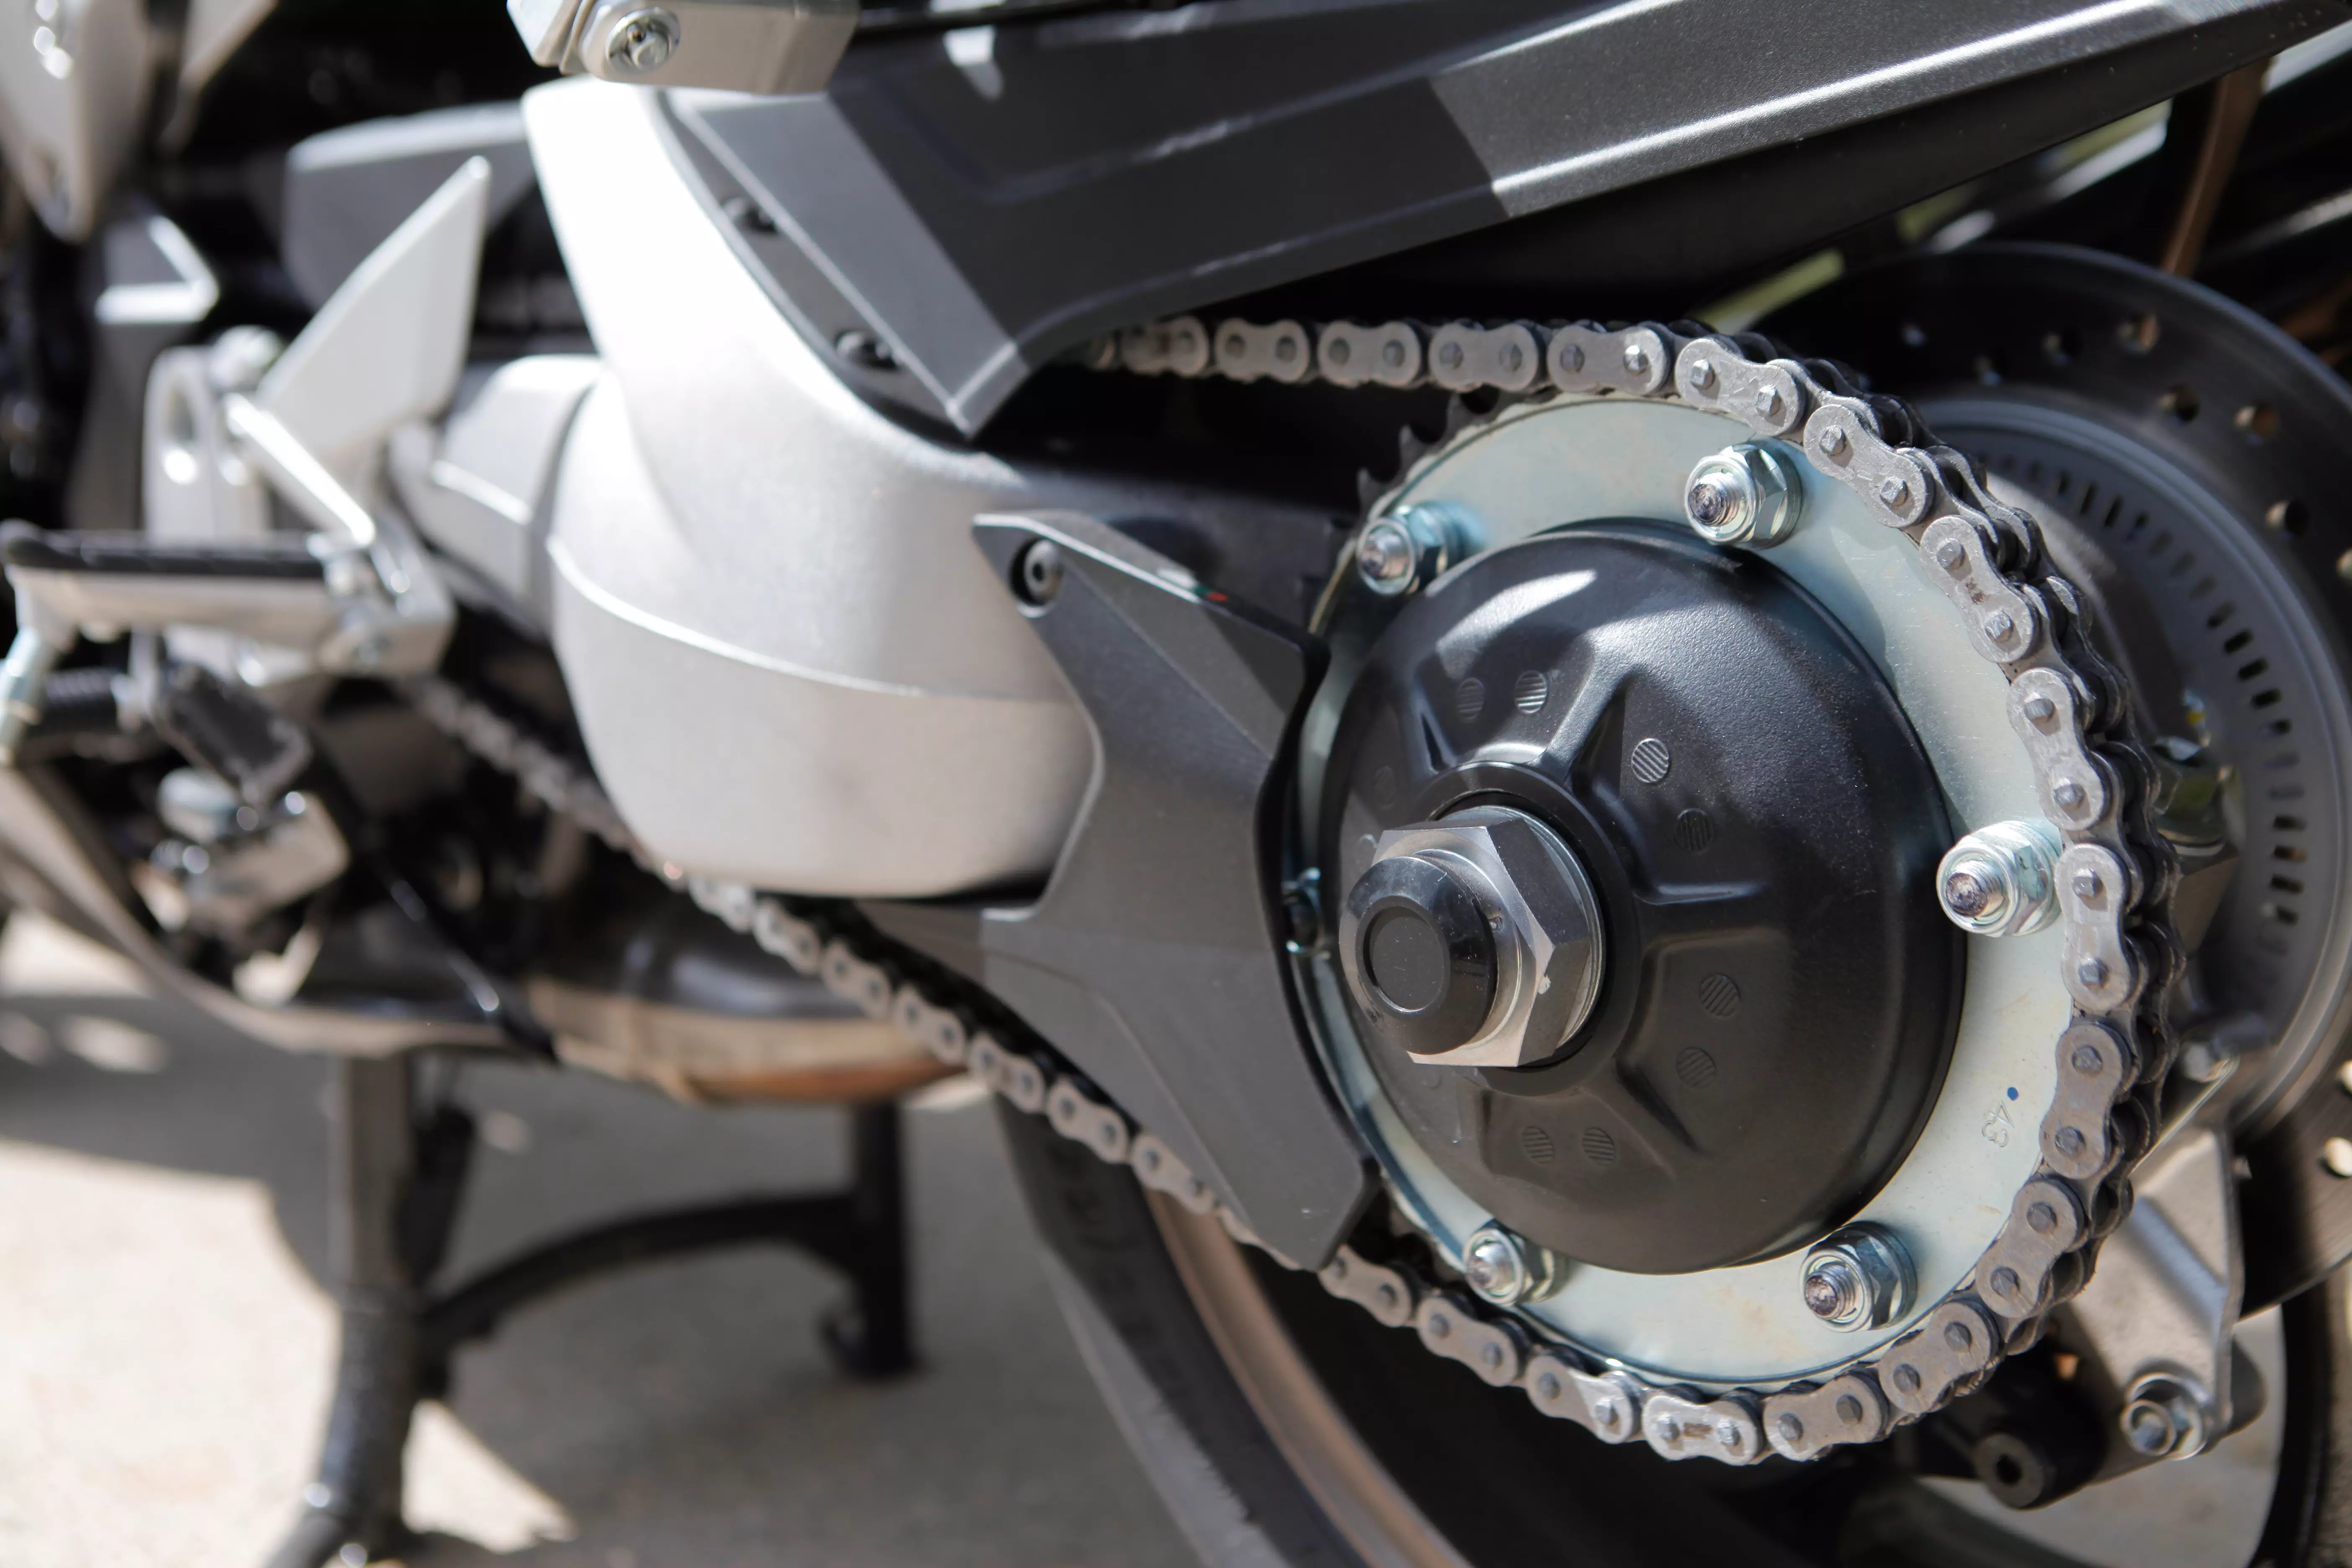 מבחן אופנוע הונדה VFR800F. אפריל 2015